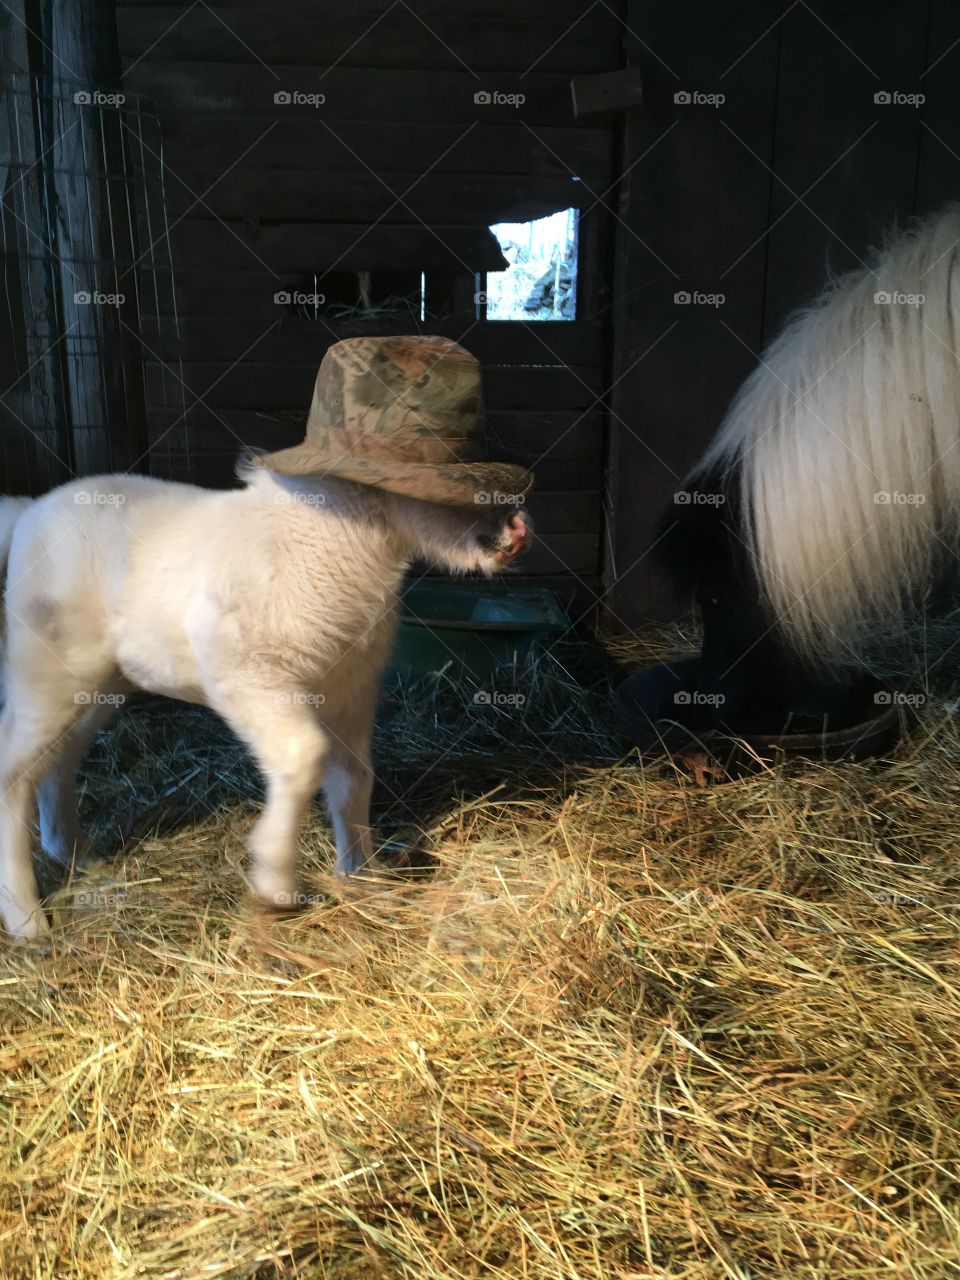 Cool hat pony